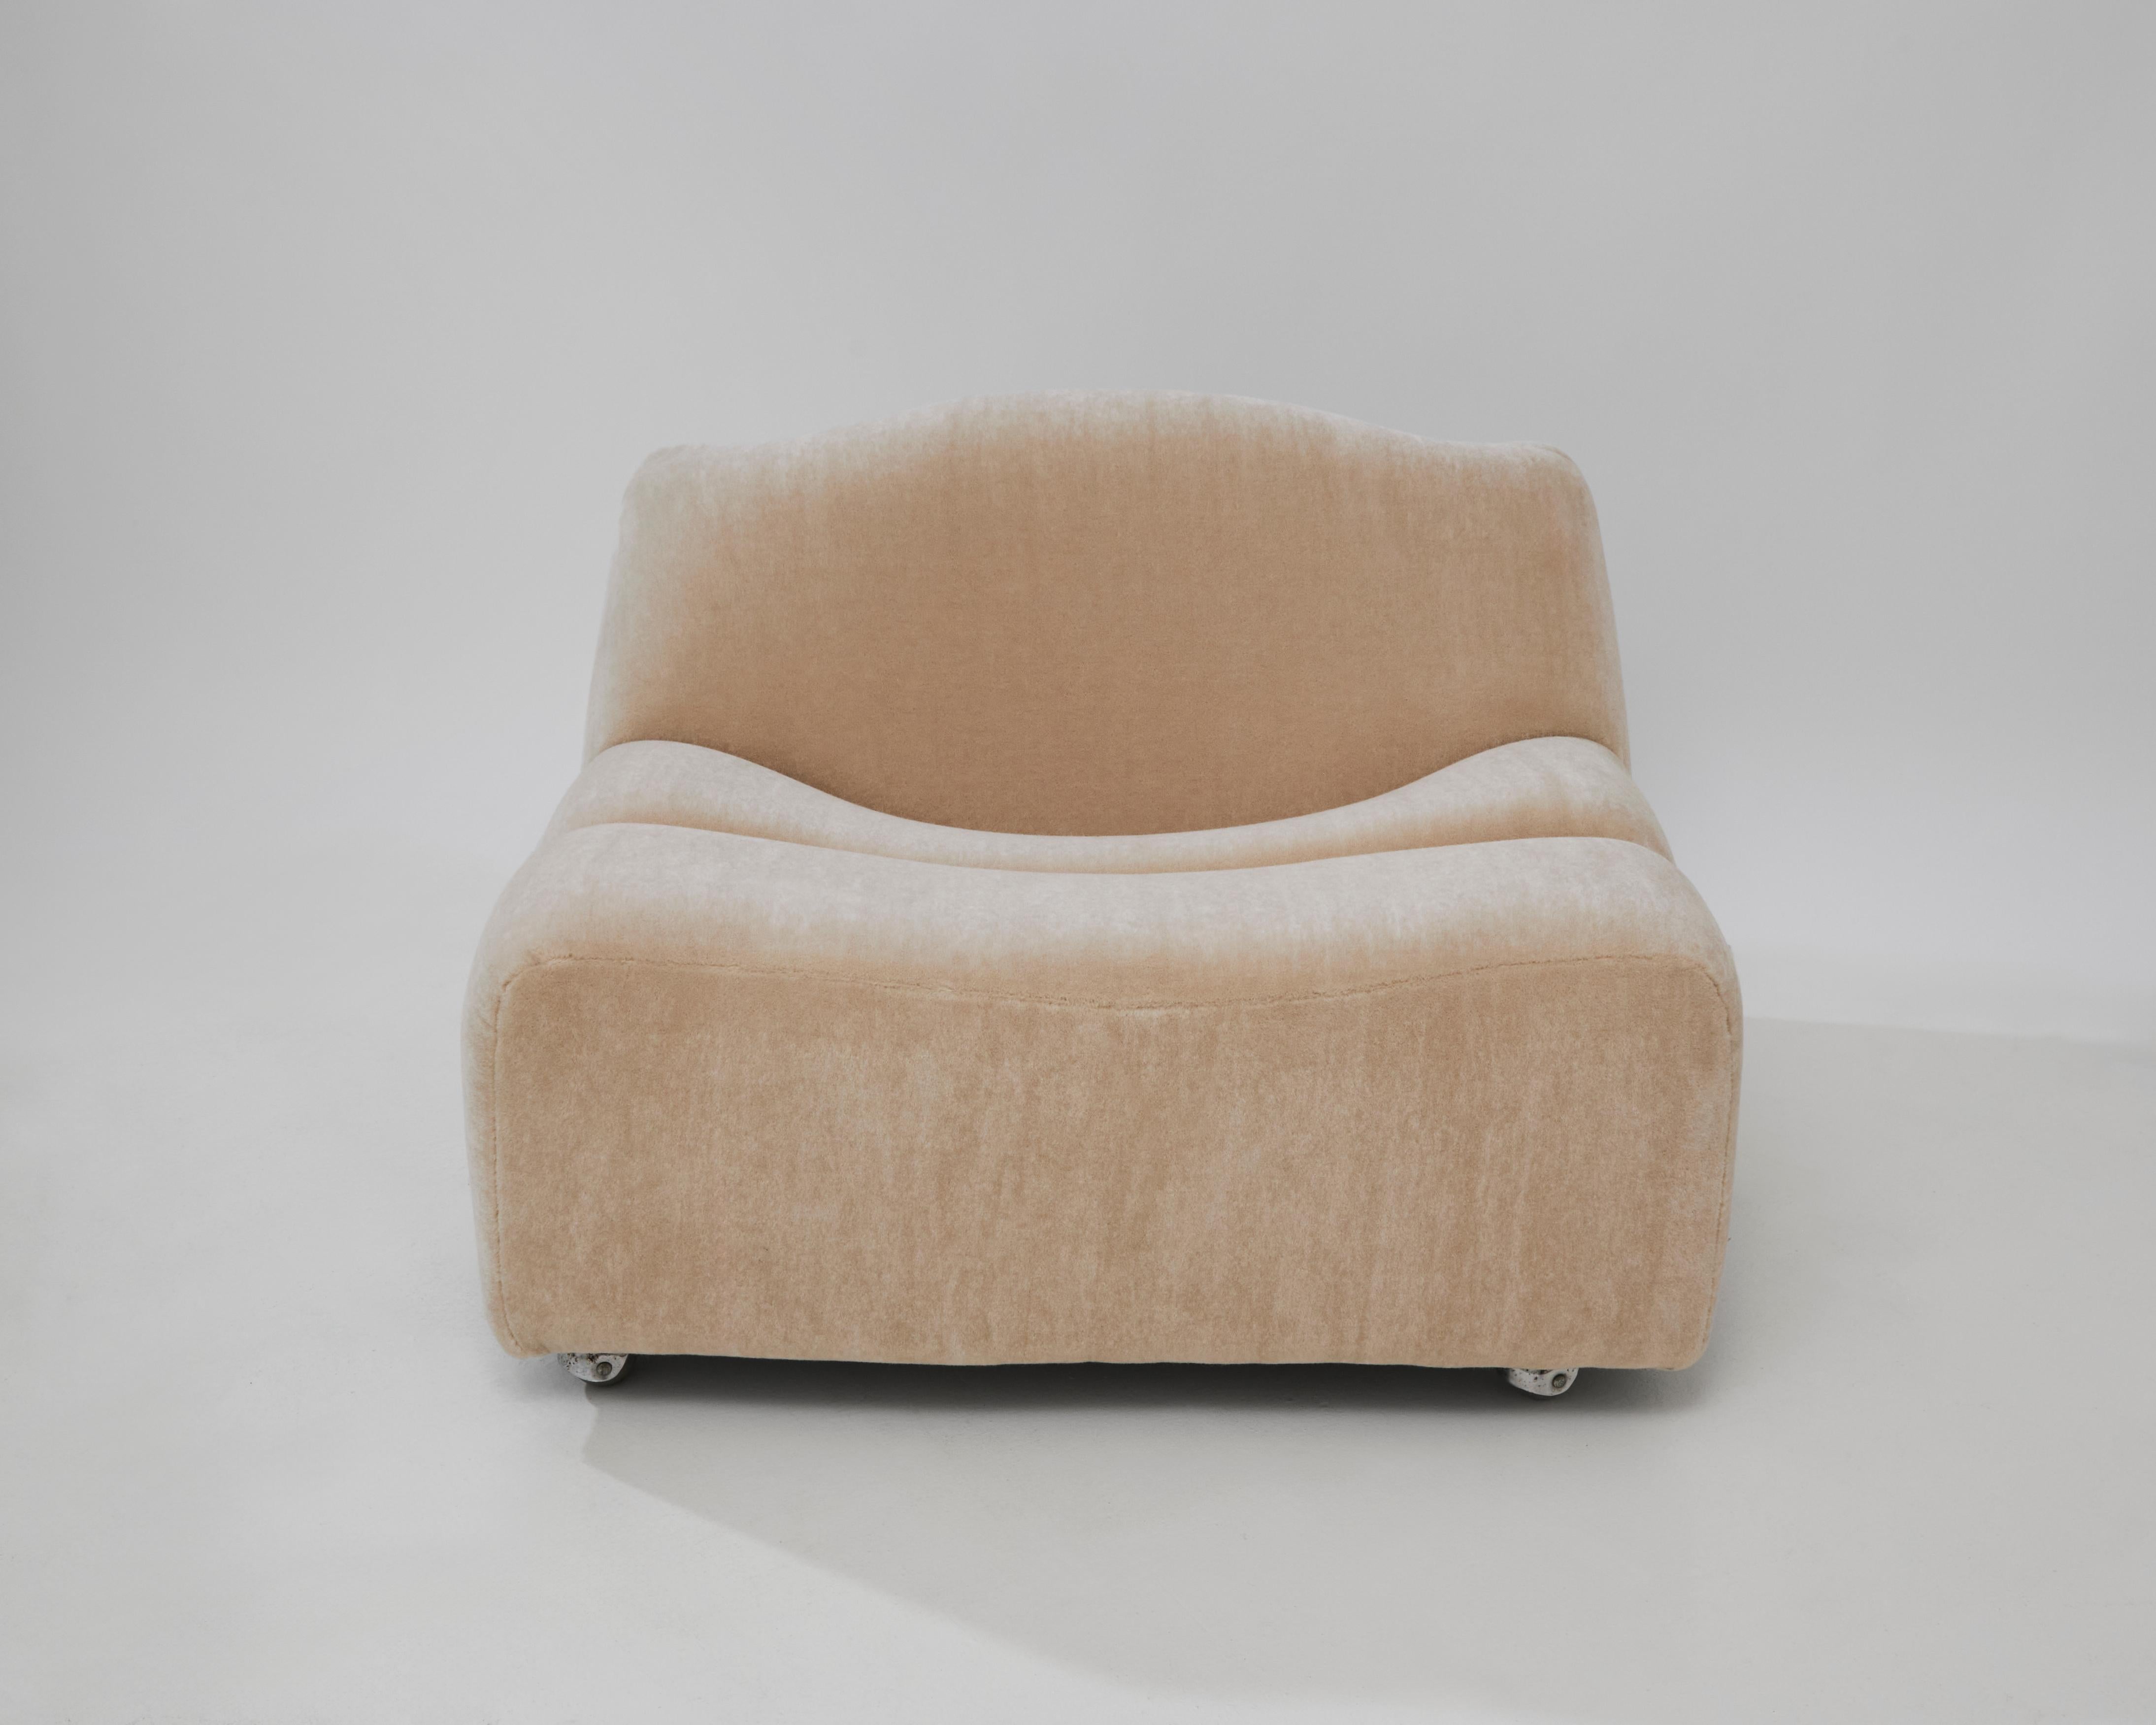 Unglaubliches ABCD-Sofa, ein skulpturaler Einsitzer, entworfen von Pierre Paulin für Artifort im Jahr 1968. Dieses Sofa besteht aus drei verschiedenen Segmenten, die sich durch ihre wellenförmigen Kurven unterscheiden. Die sanft geschwungenen Sitze